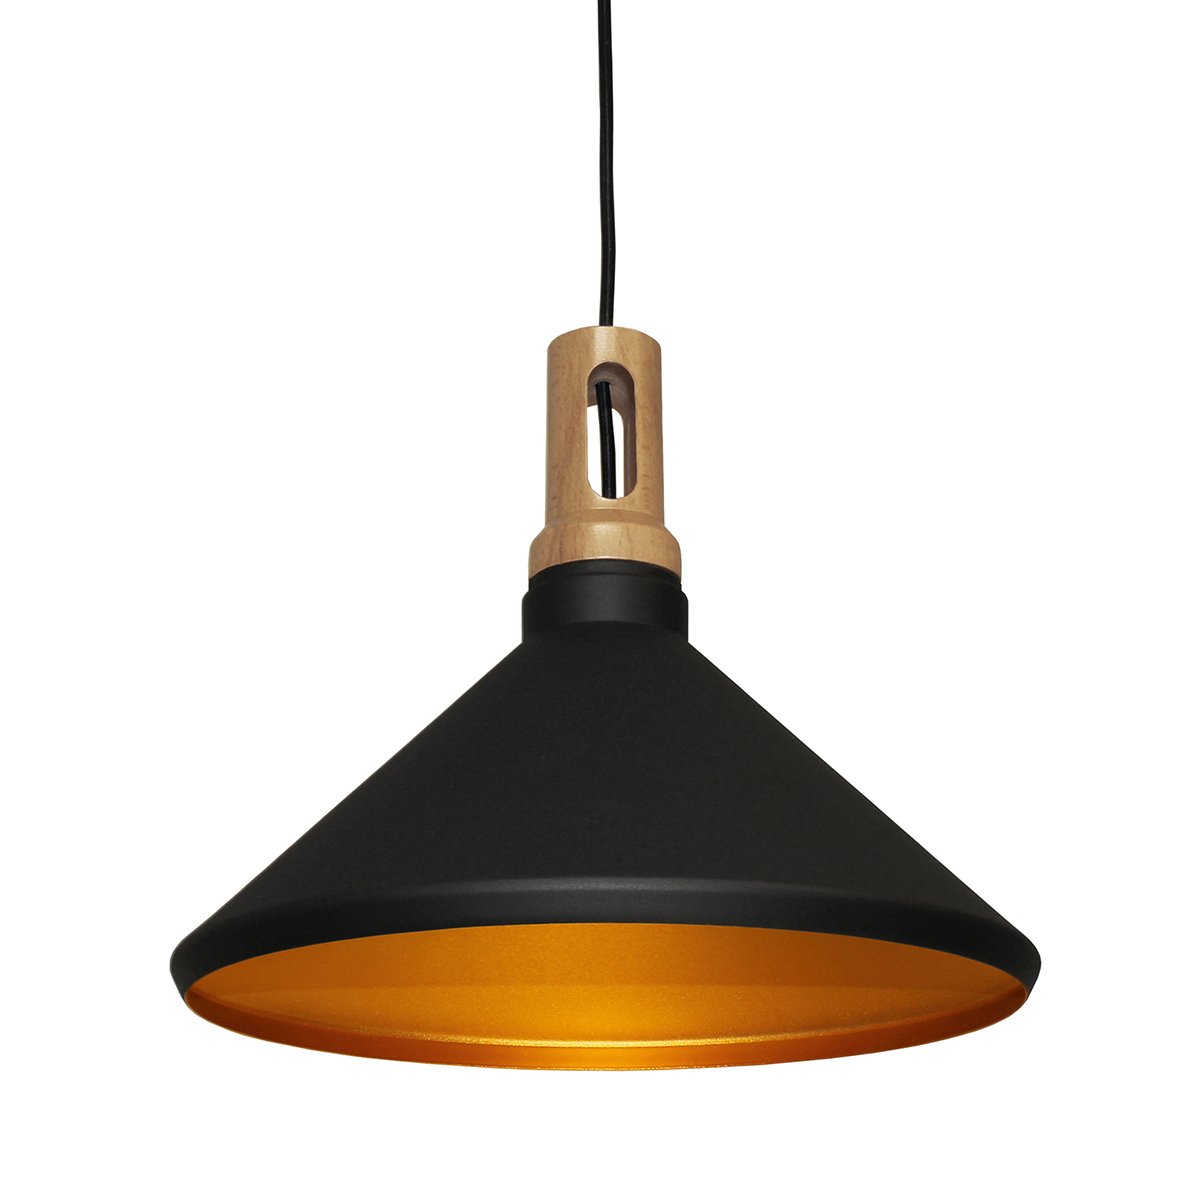 Kamerlamp plafond zwart goud Carini - Ø 41 cm